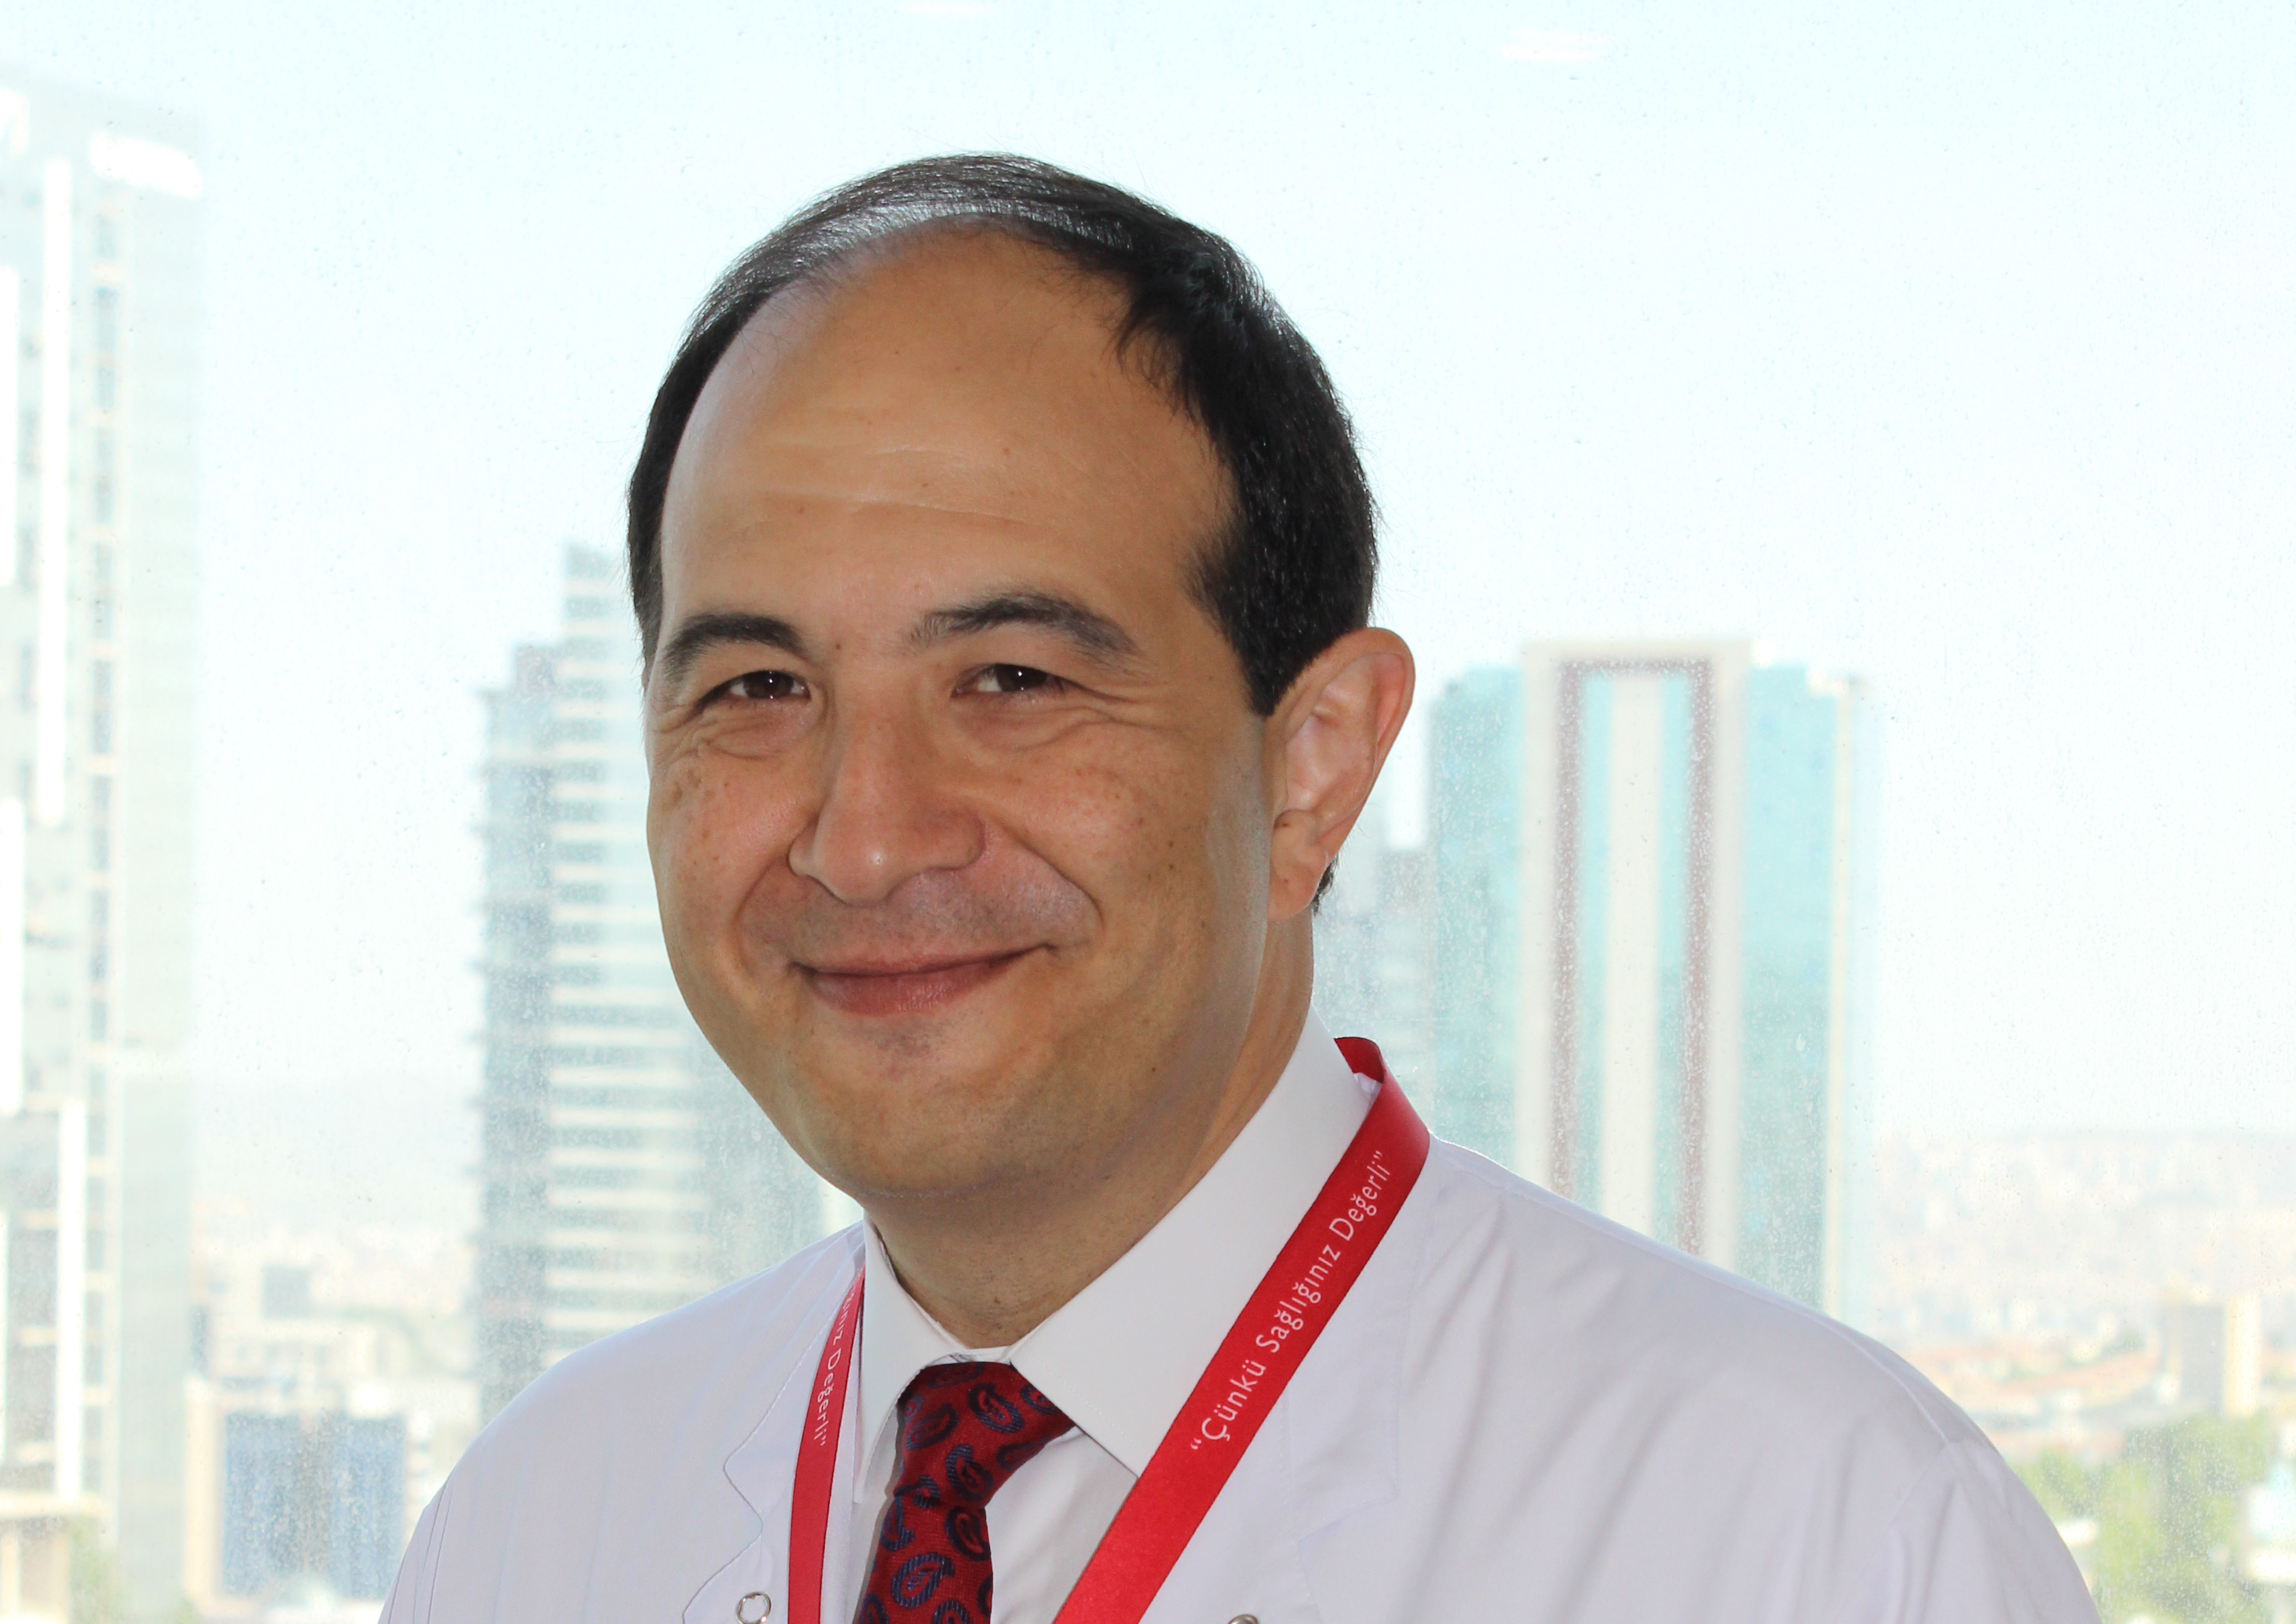 Ortopedi ve Travmatoloji Bölümü’nden Prof. Dr. Hakan Özsoy